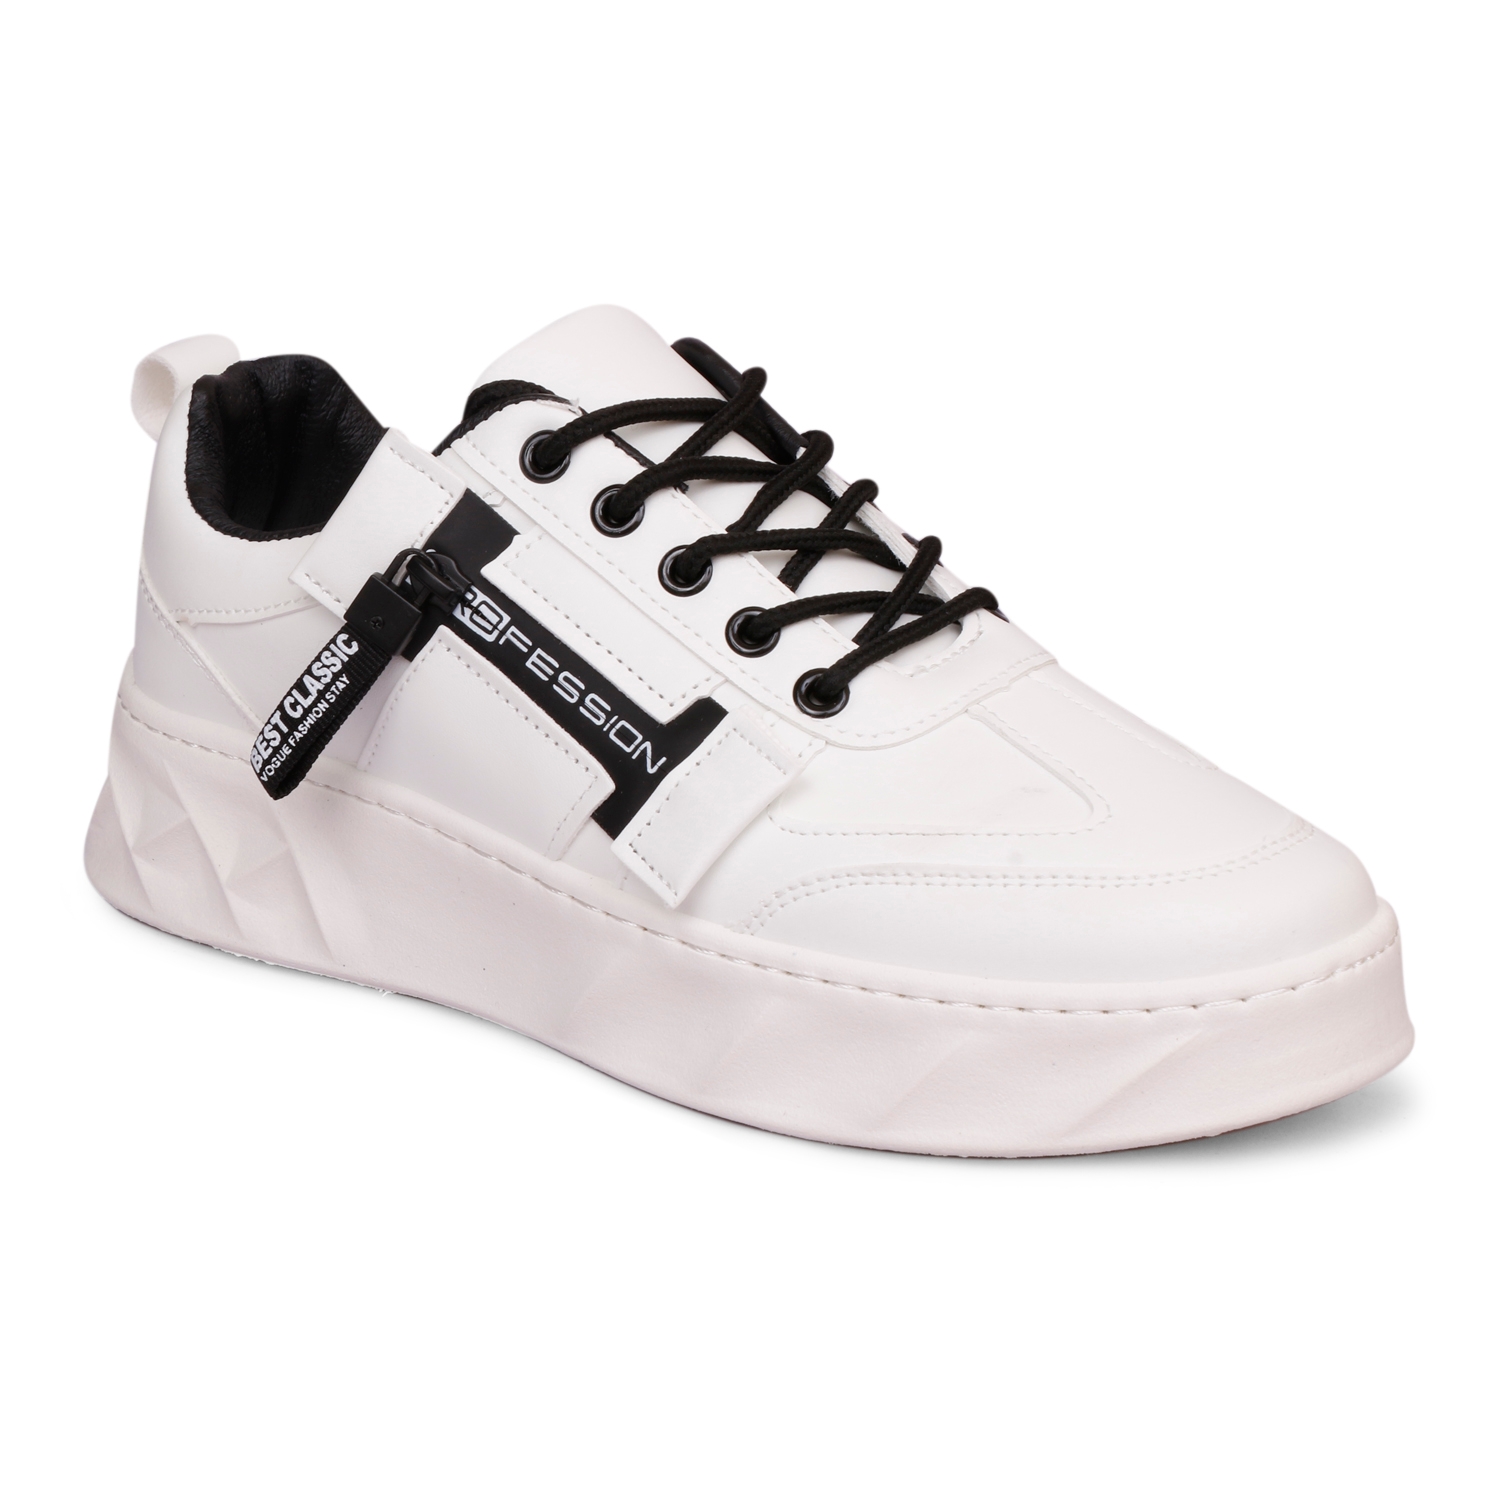 Buy CIPRAMO Footwear online - Men - 91 products | FASHIOLA.in